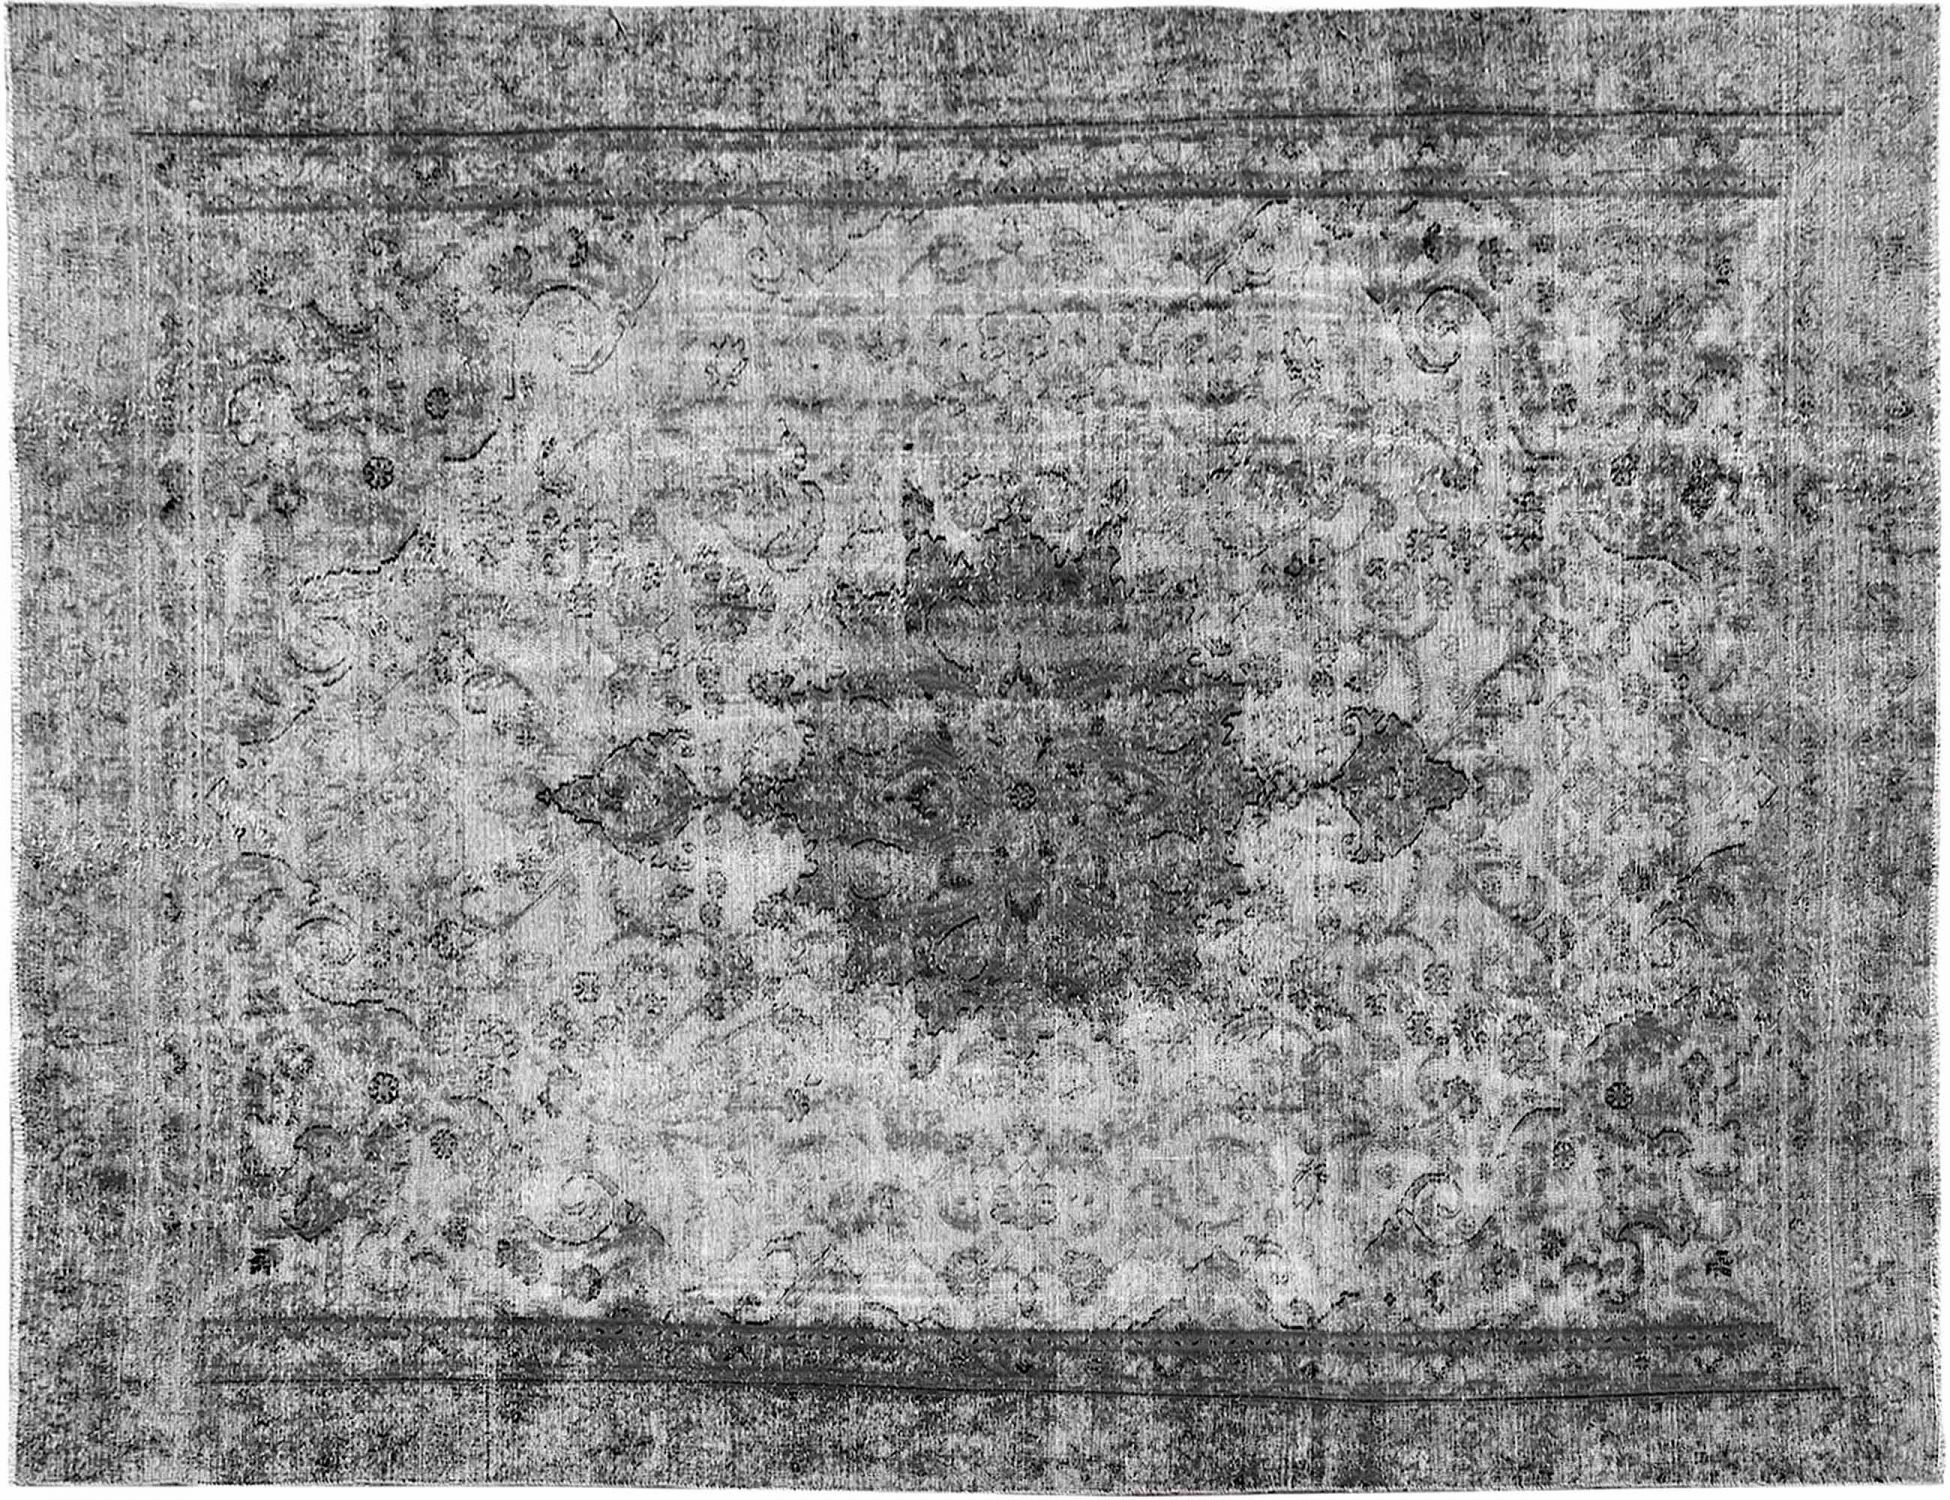 Persischer Vintage Teppich  grau <br/>350 x 250 cm